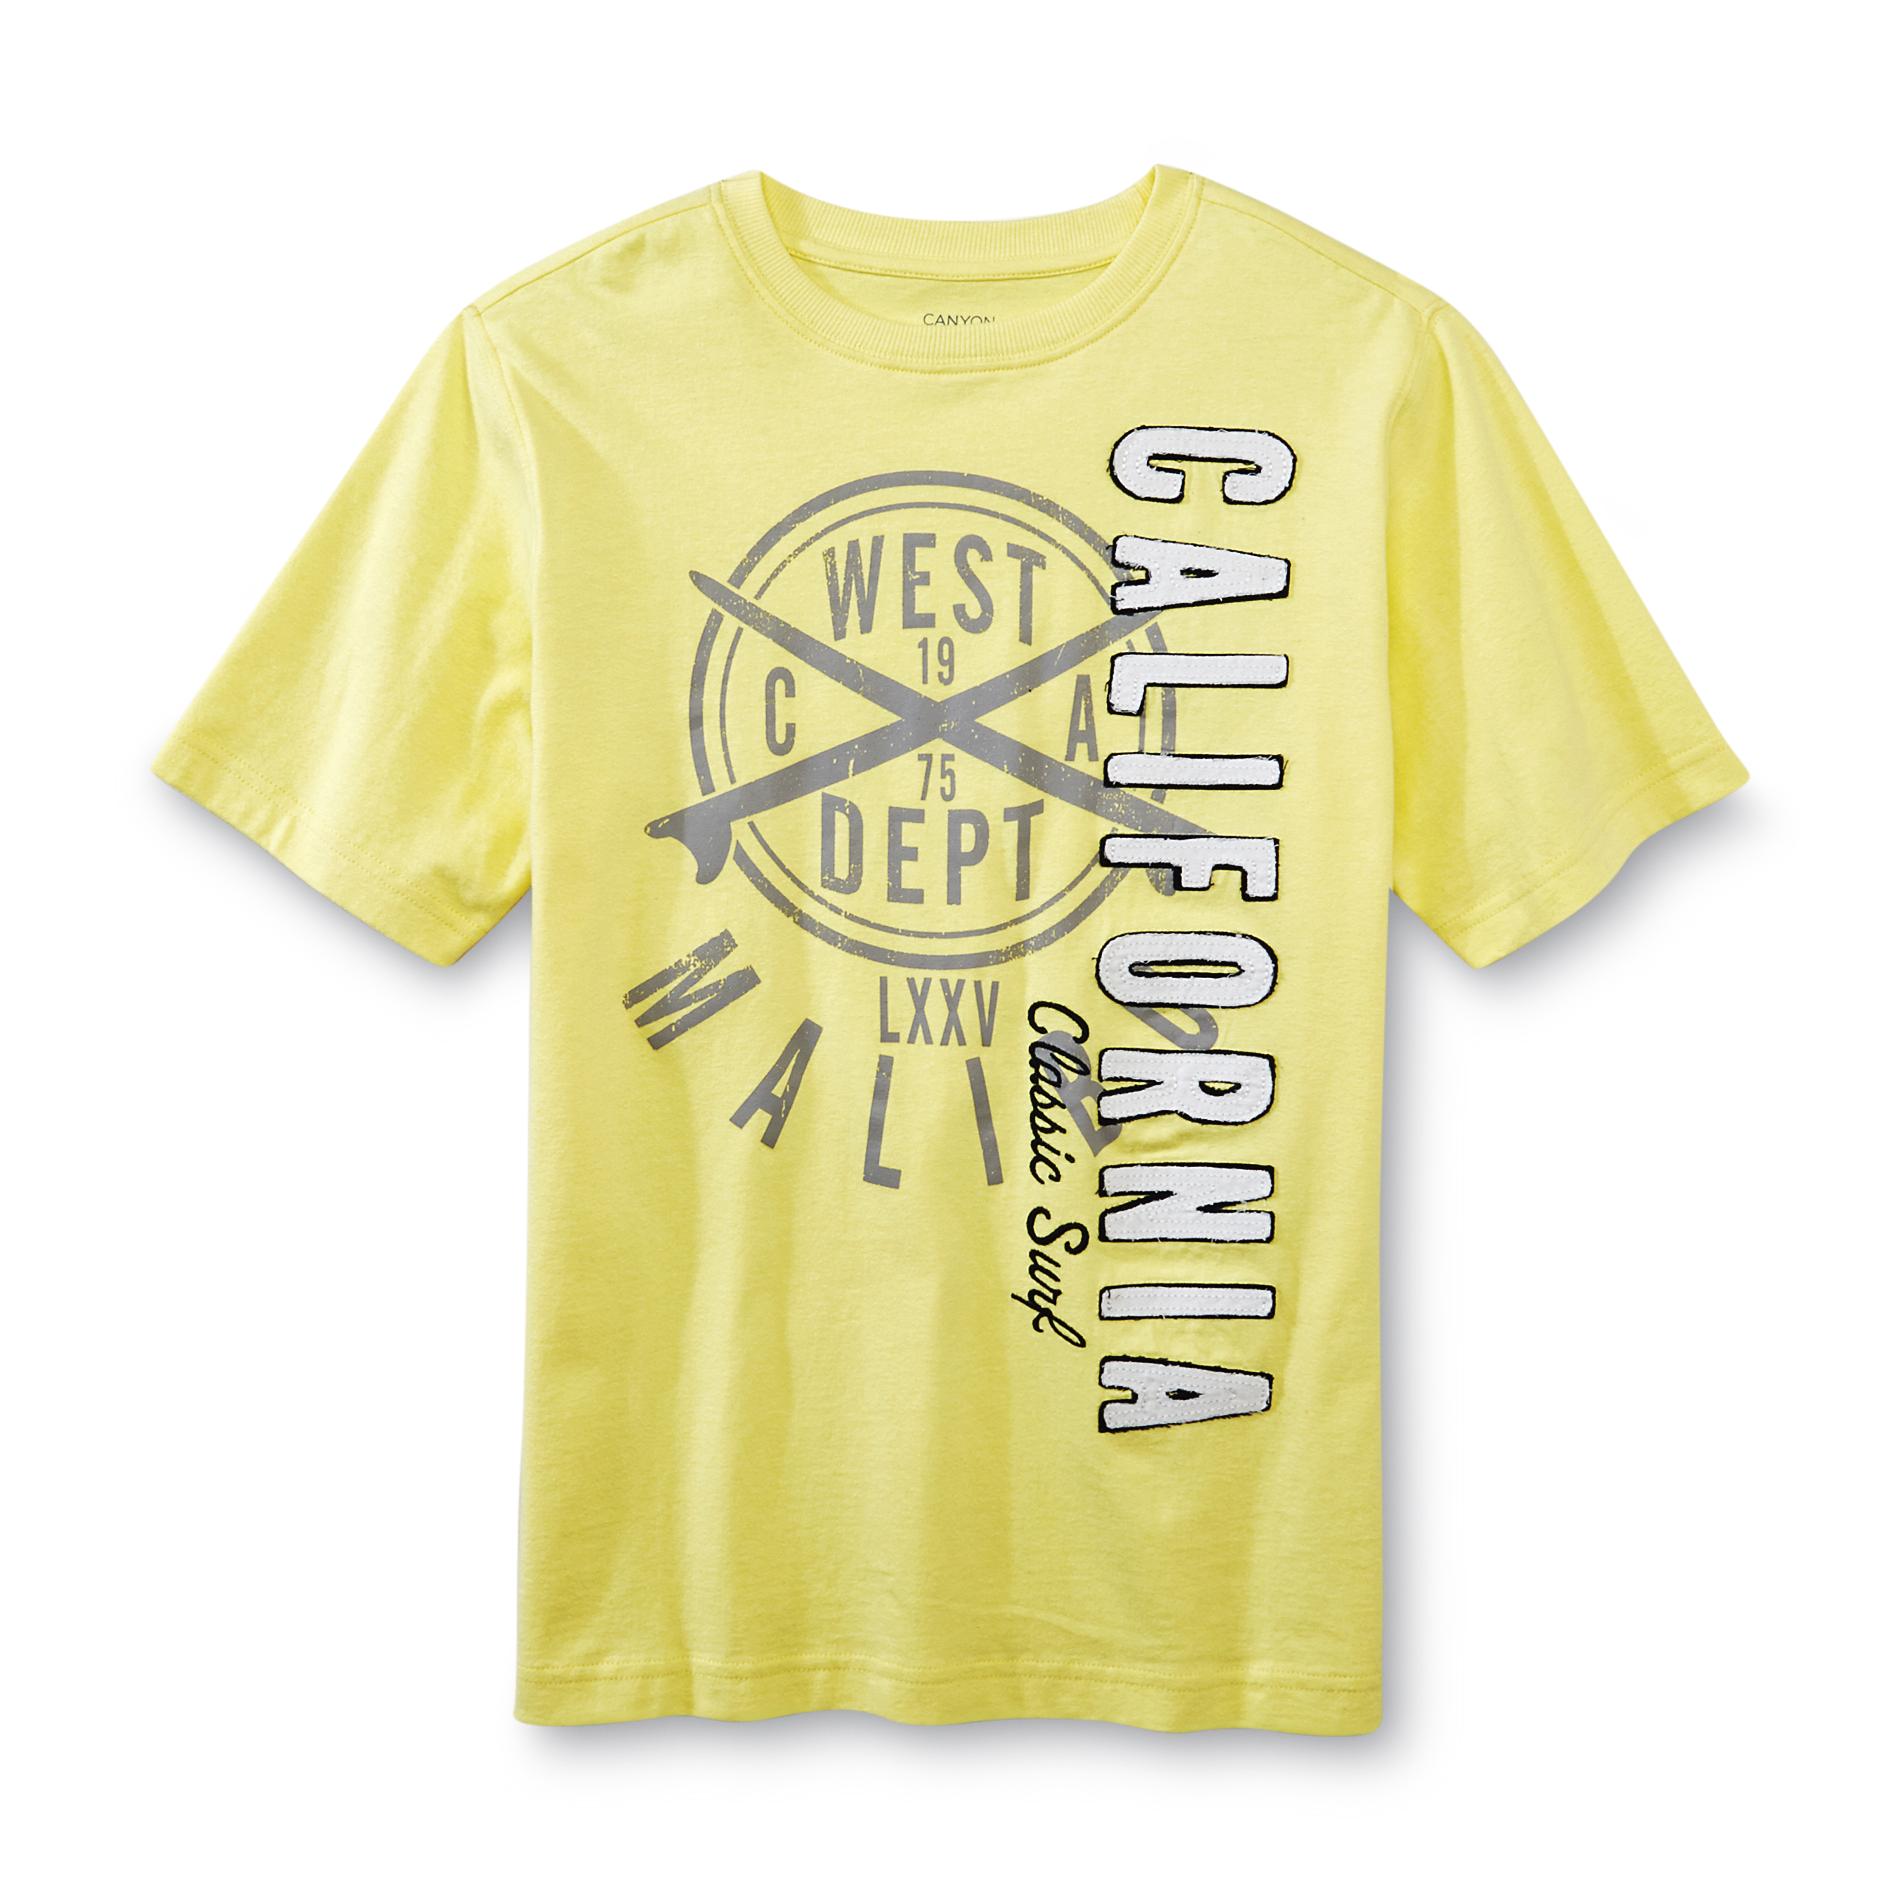 Canyon River Blues Boy's Graphic T-Shirt - Malibu California